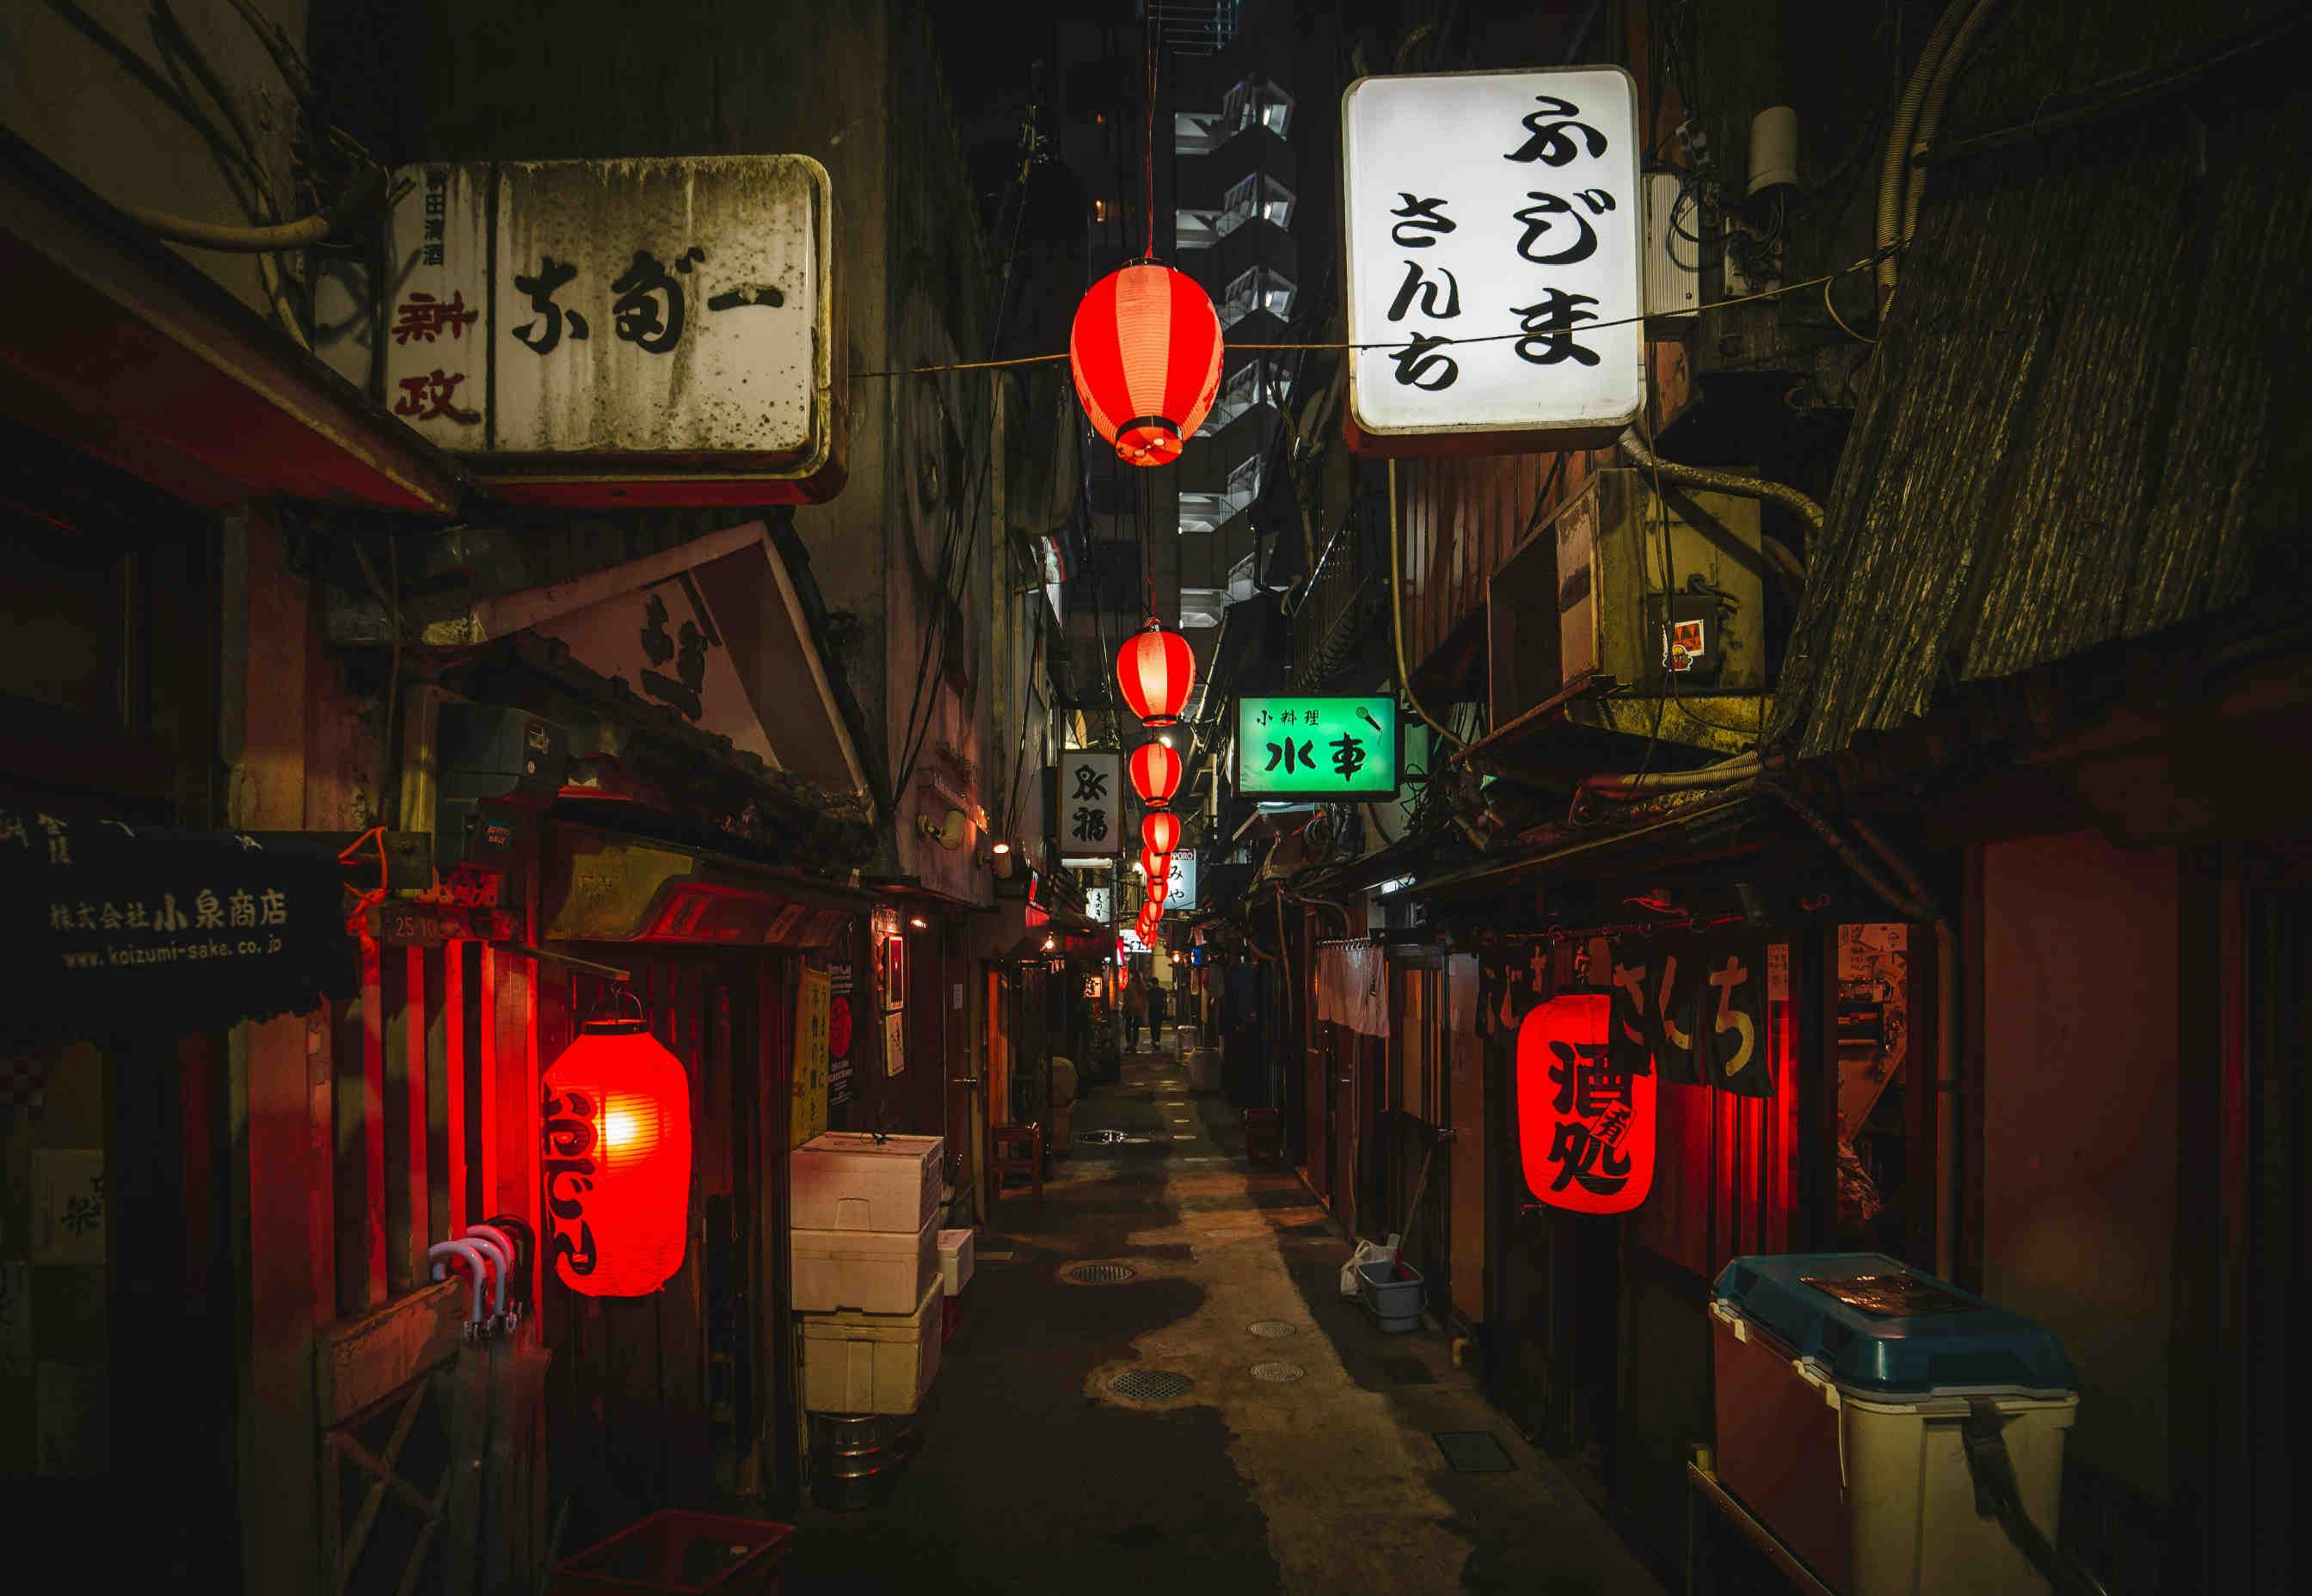 An alleyway in Tokyo